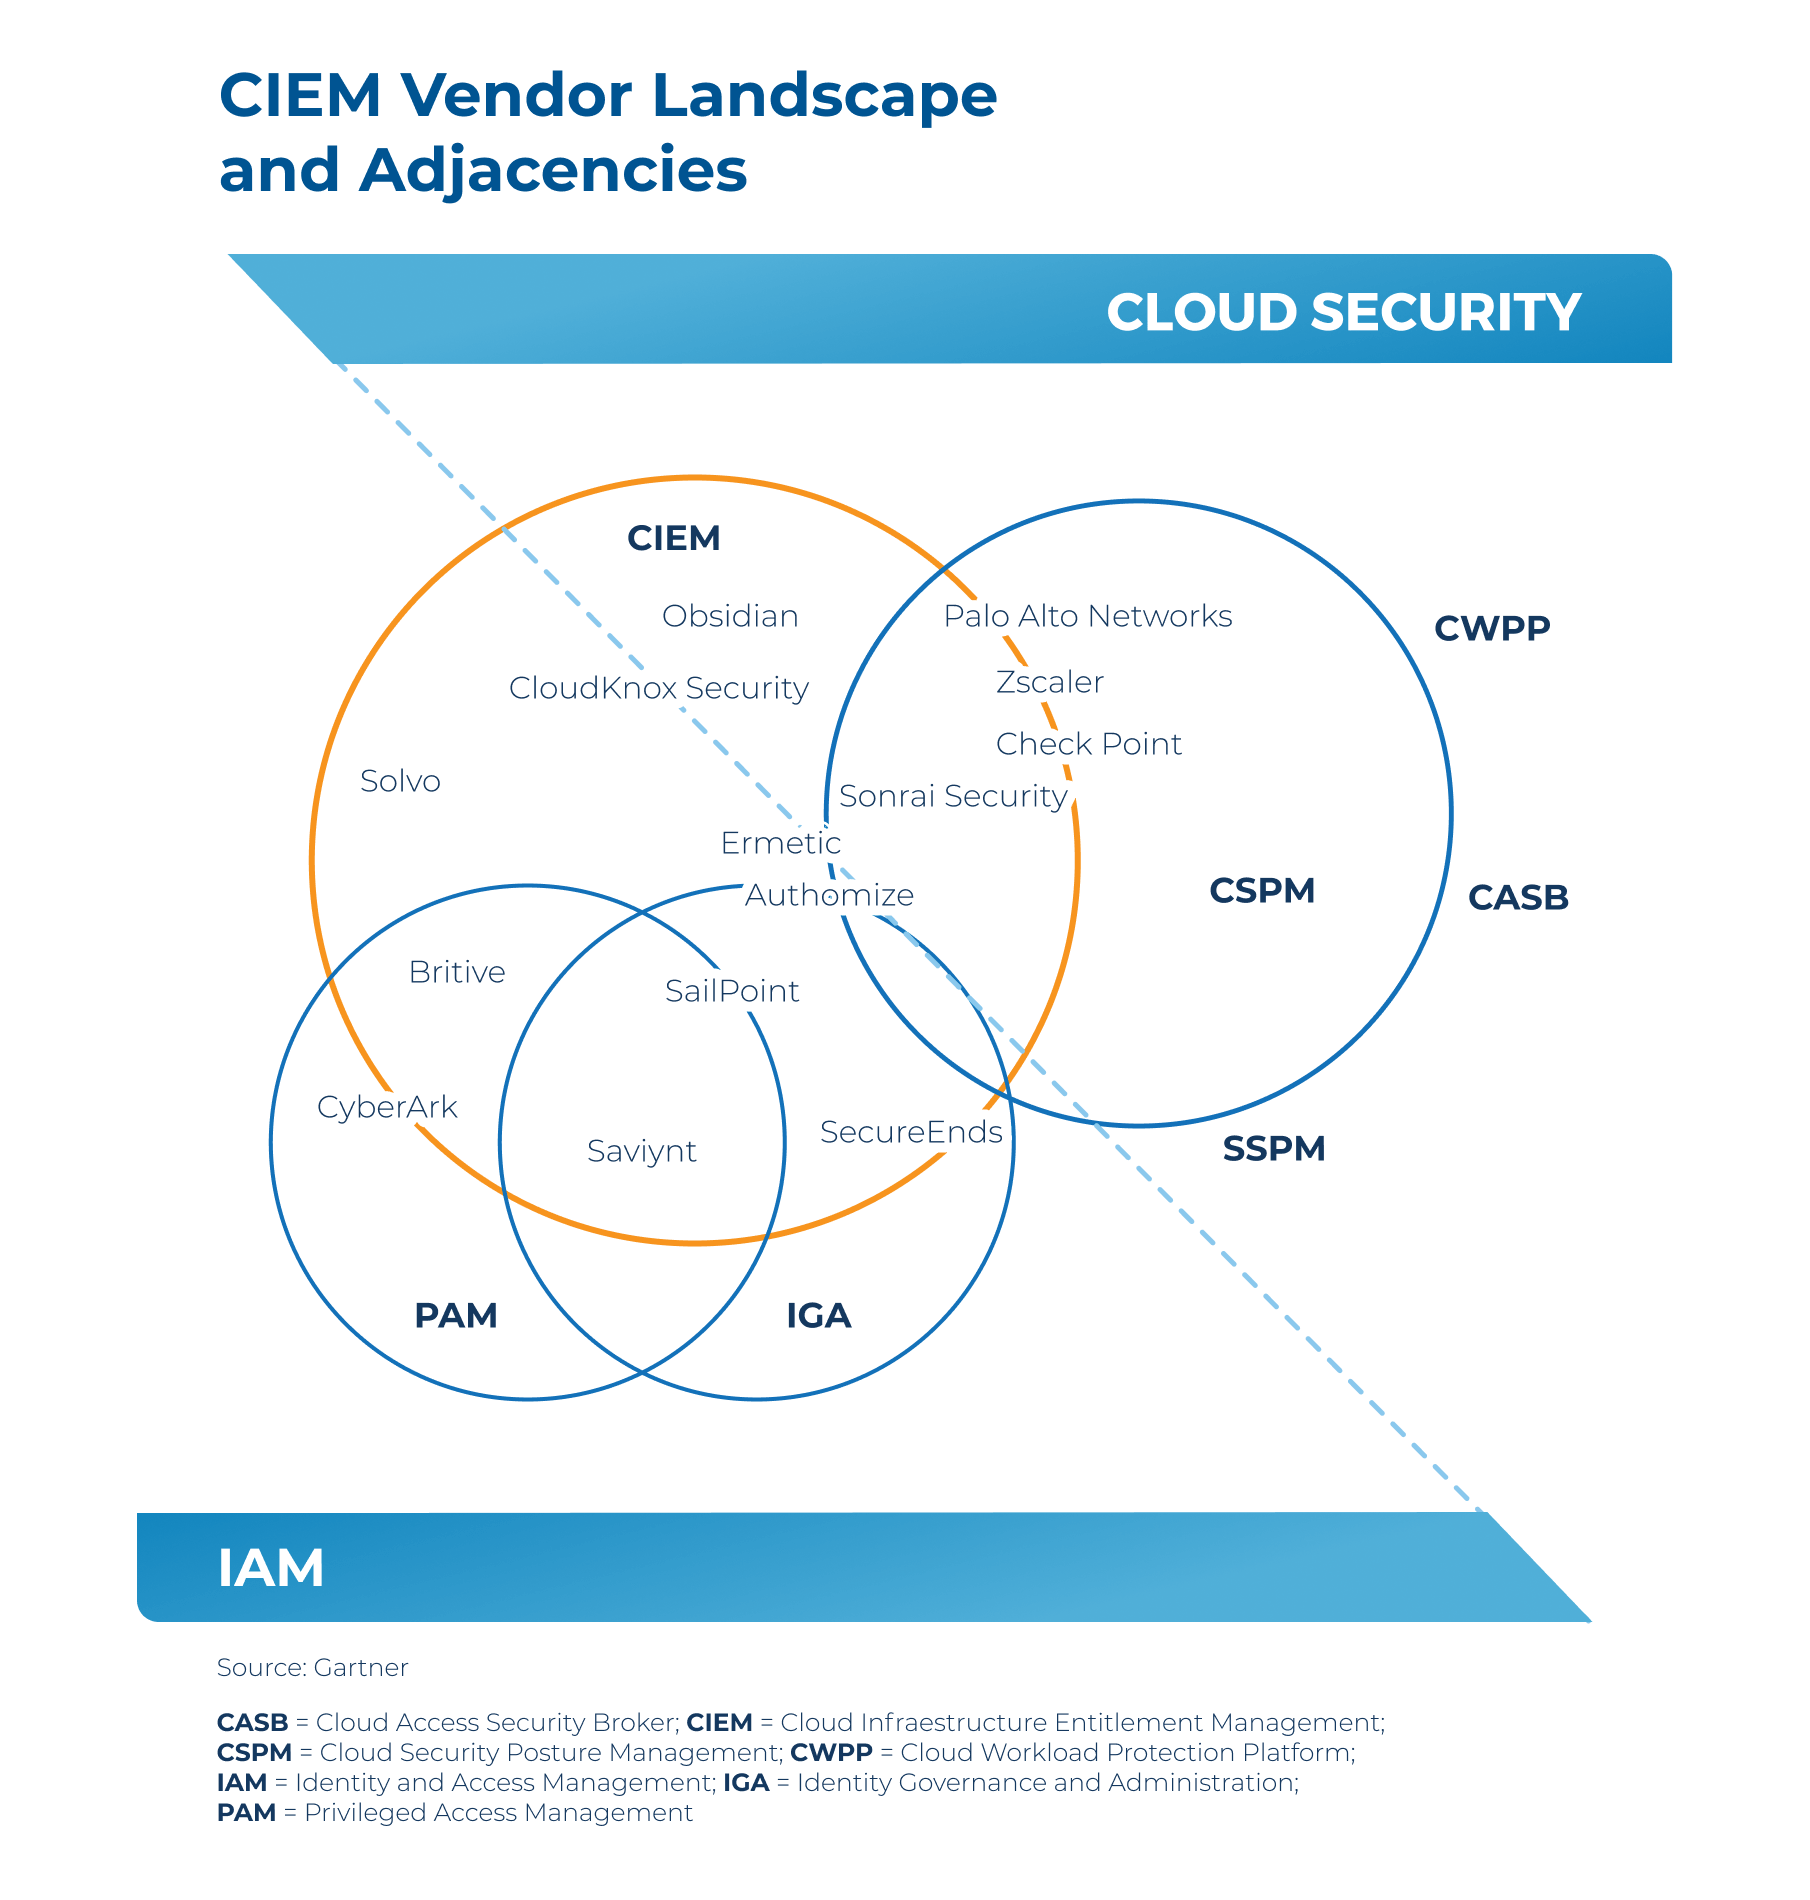 Cloud-Infrastructure-Entitlement-Management-CIEM